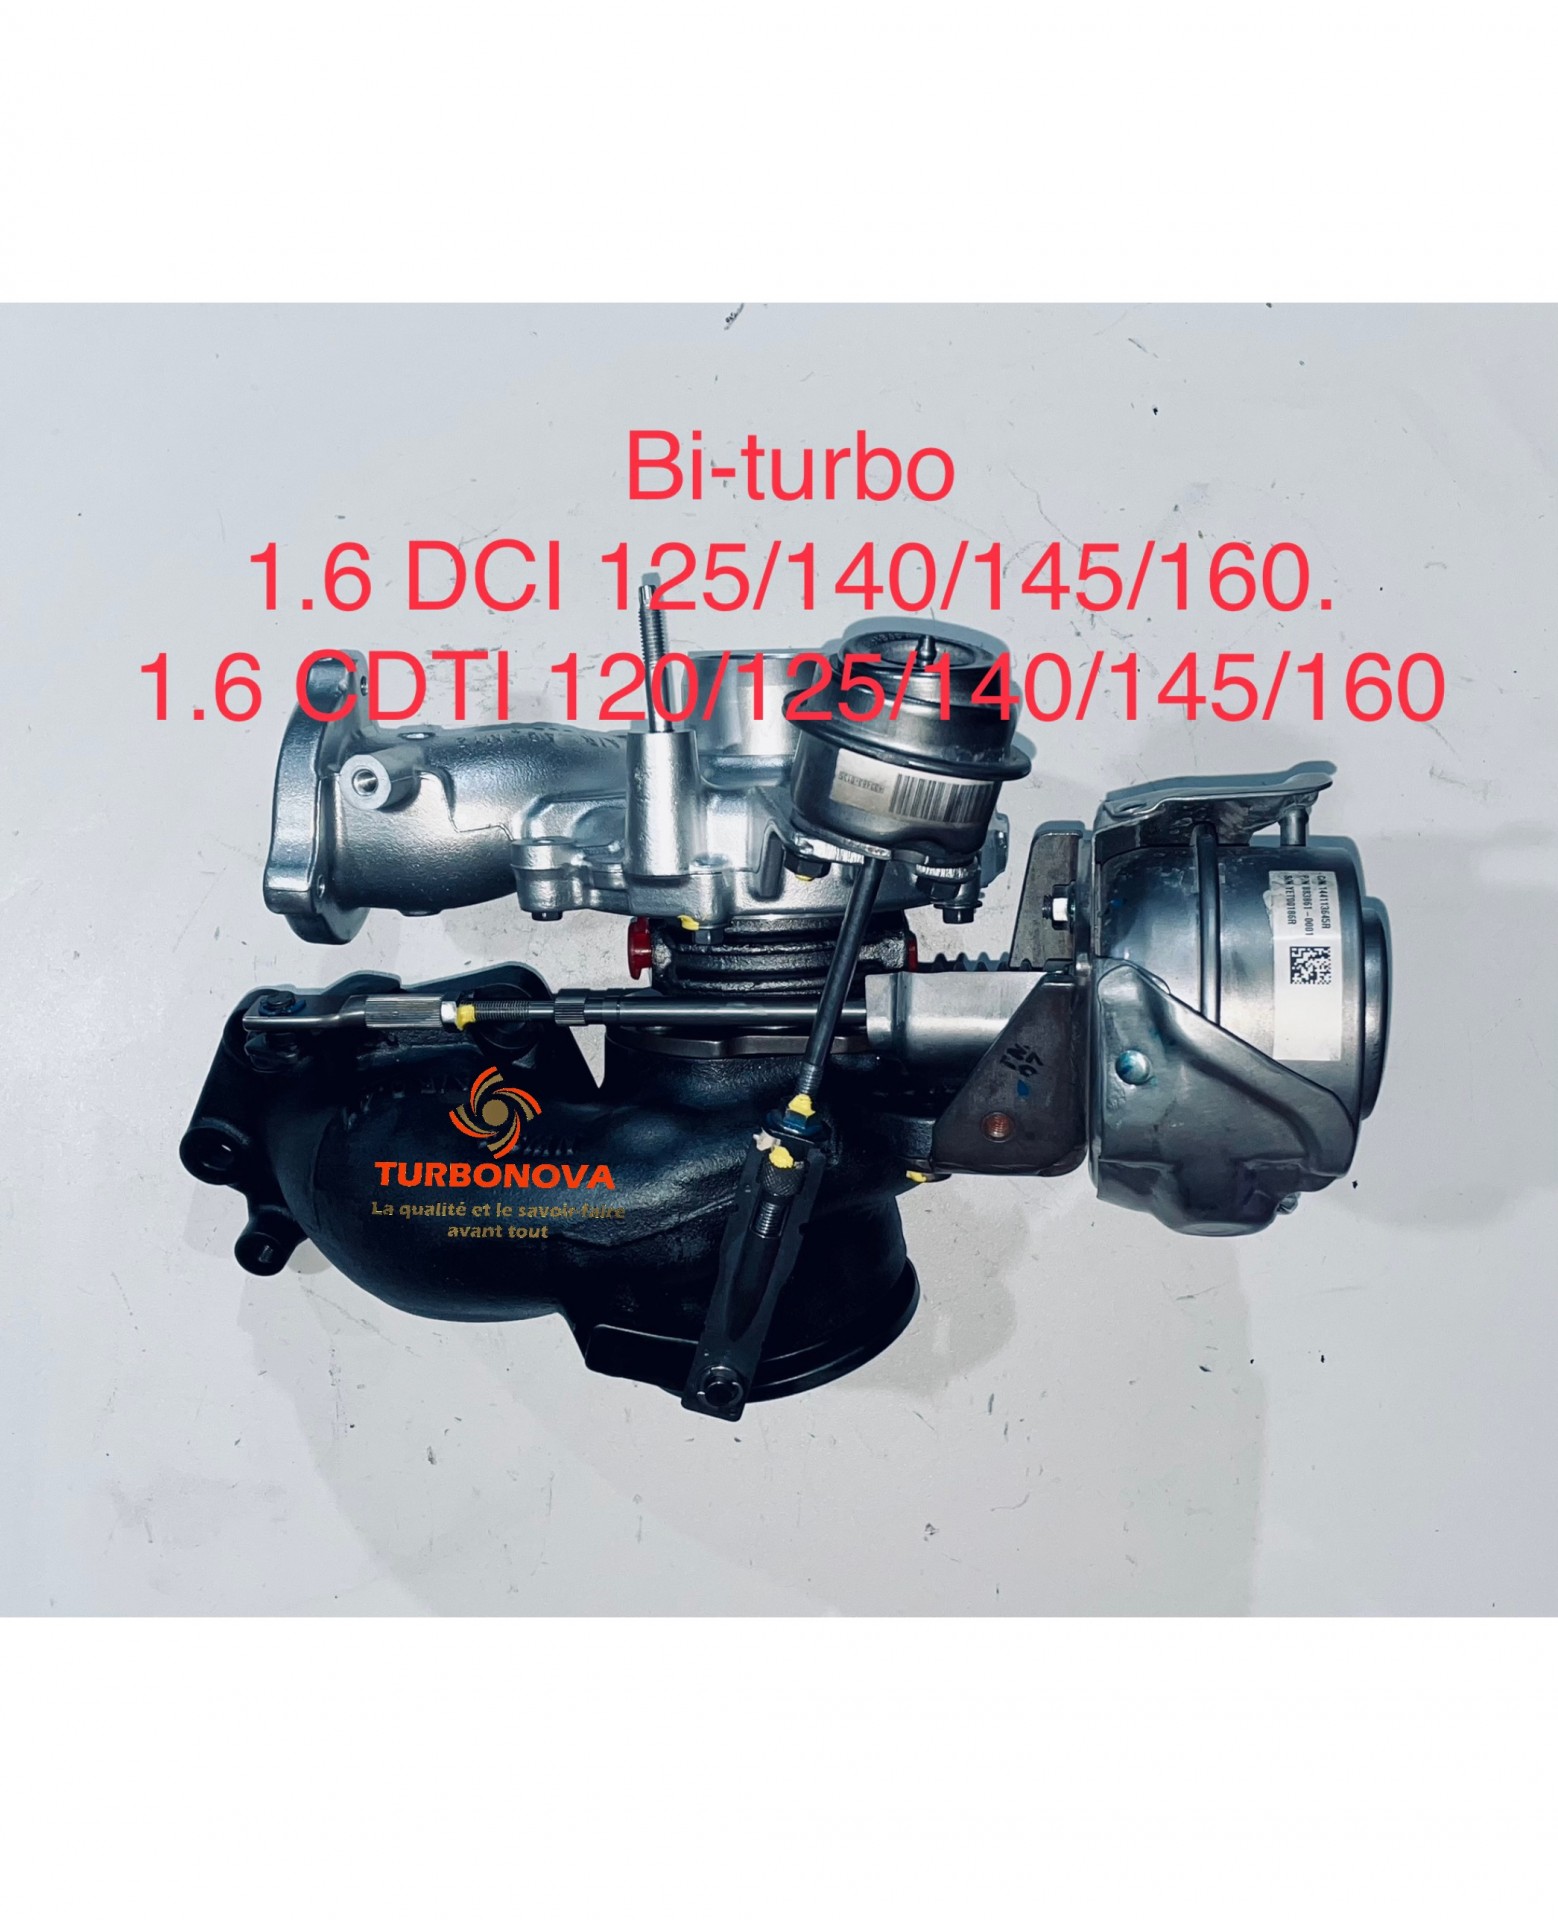 Turbo 1.6 DCI et 1.6 CDTI 